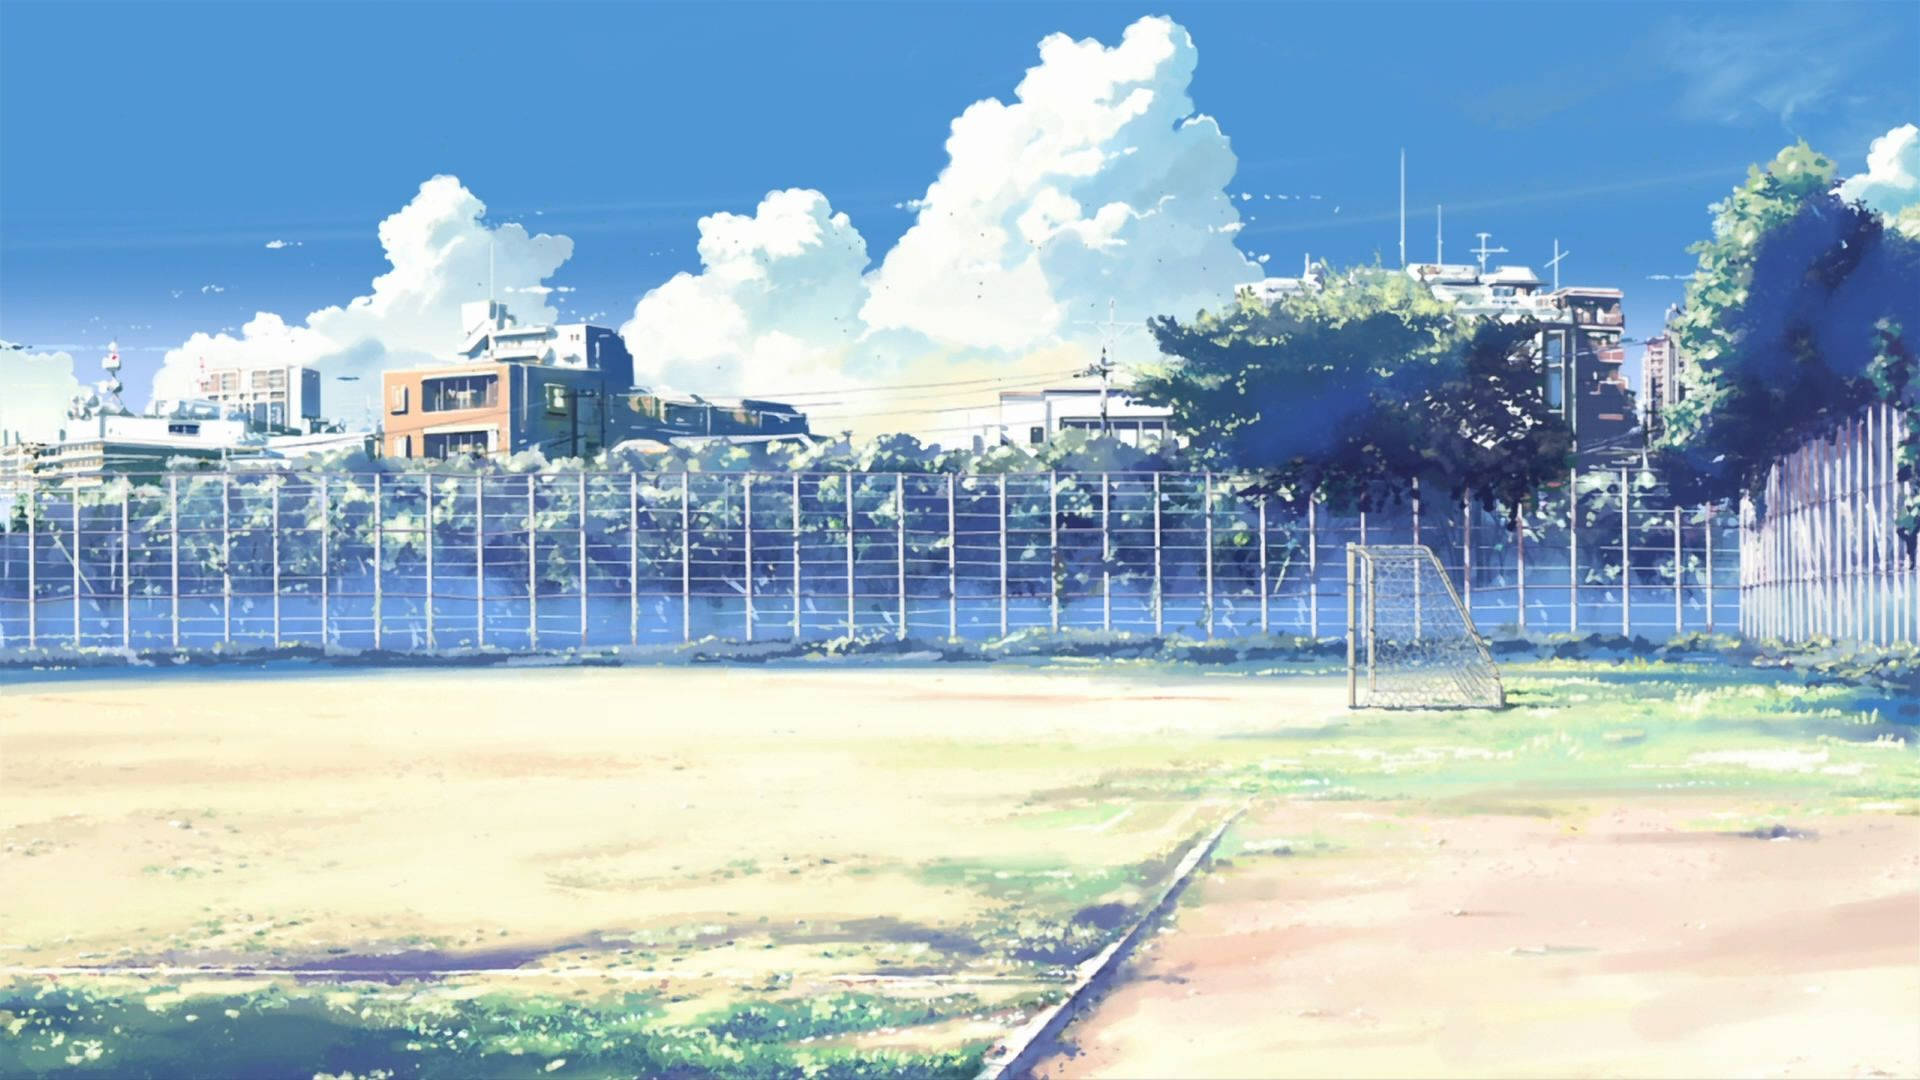 Anime School Scenery Soccer Field